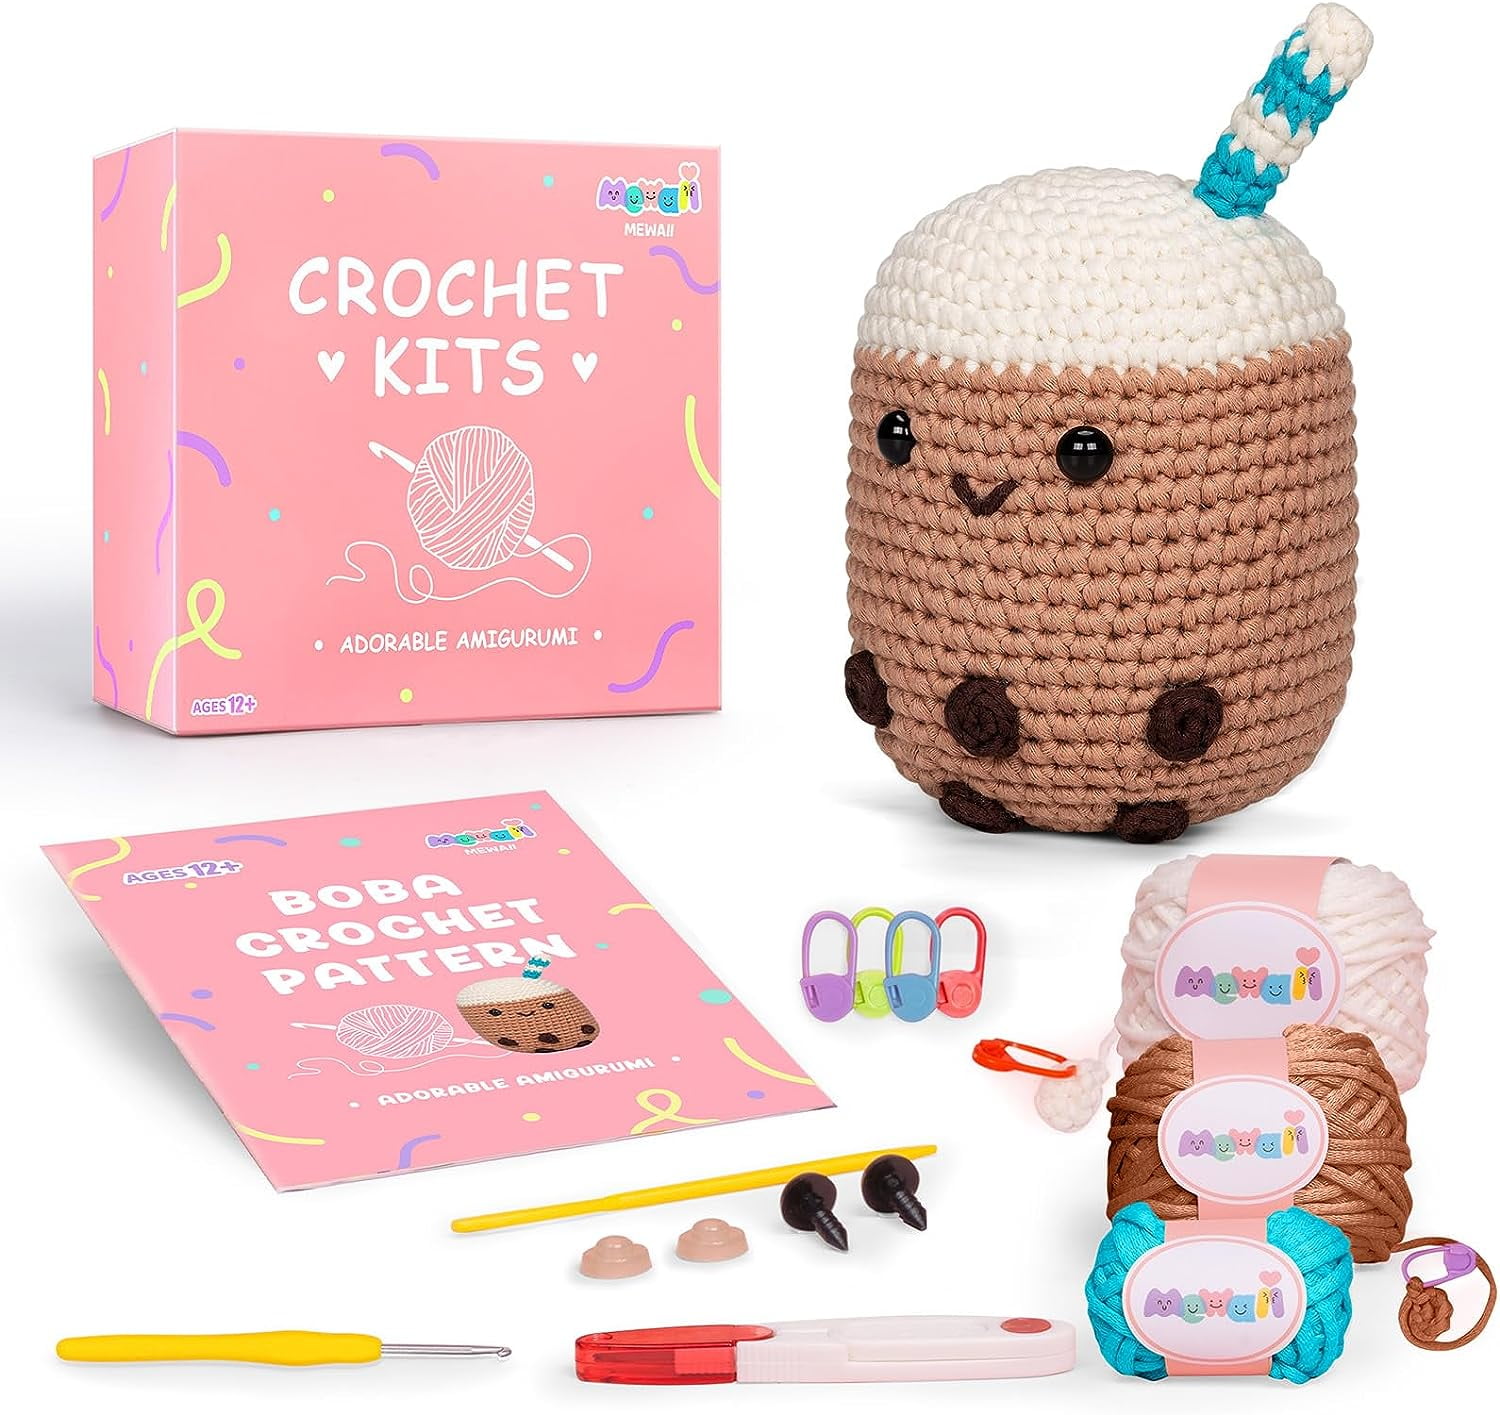 Jimcii Crochet Kit for Beginners, Beginner Crochet Knitting Kit